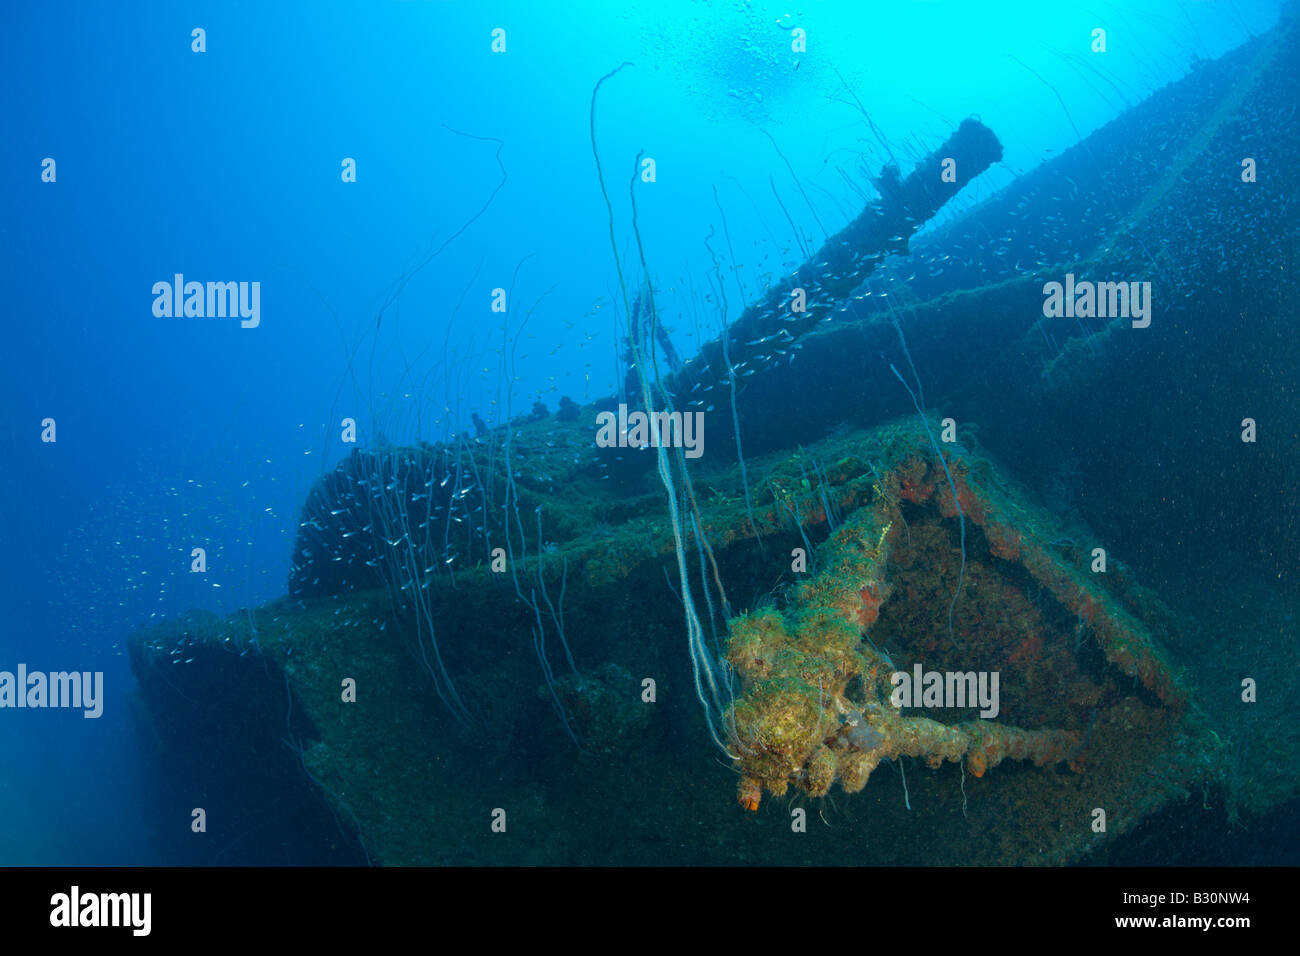 12-Zoll-Geschütz der USS Arkansas Battleship Marshallinseln Bikini Atoll Mikronesien Pazifik Stockfoto